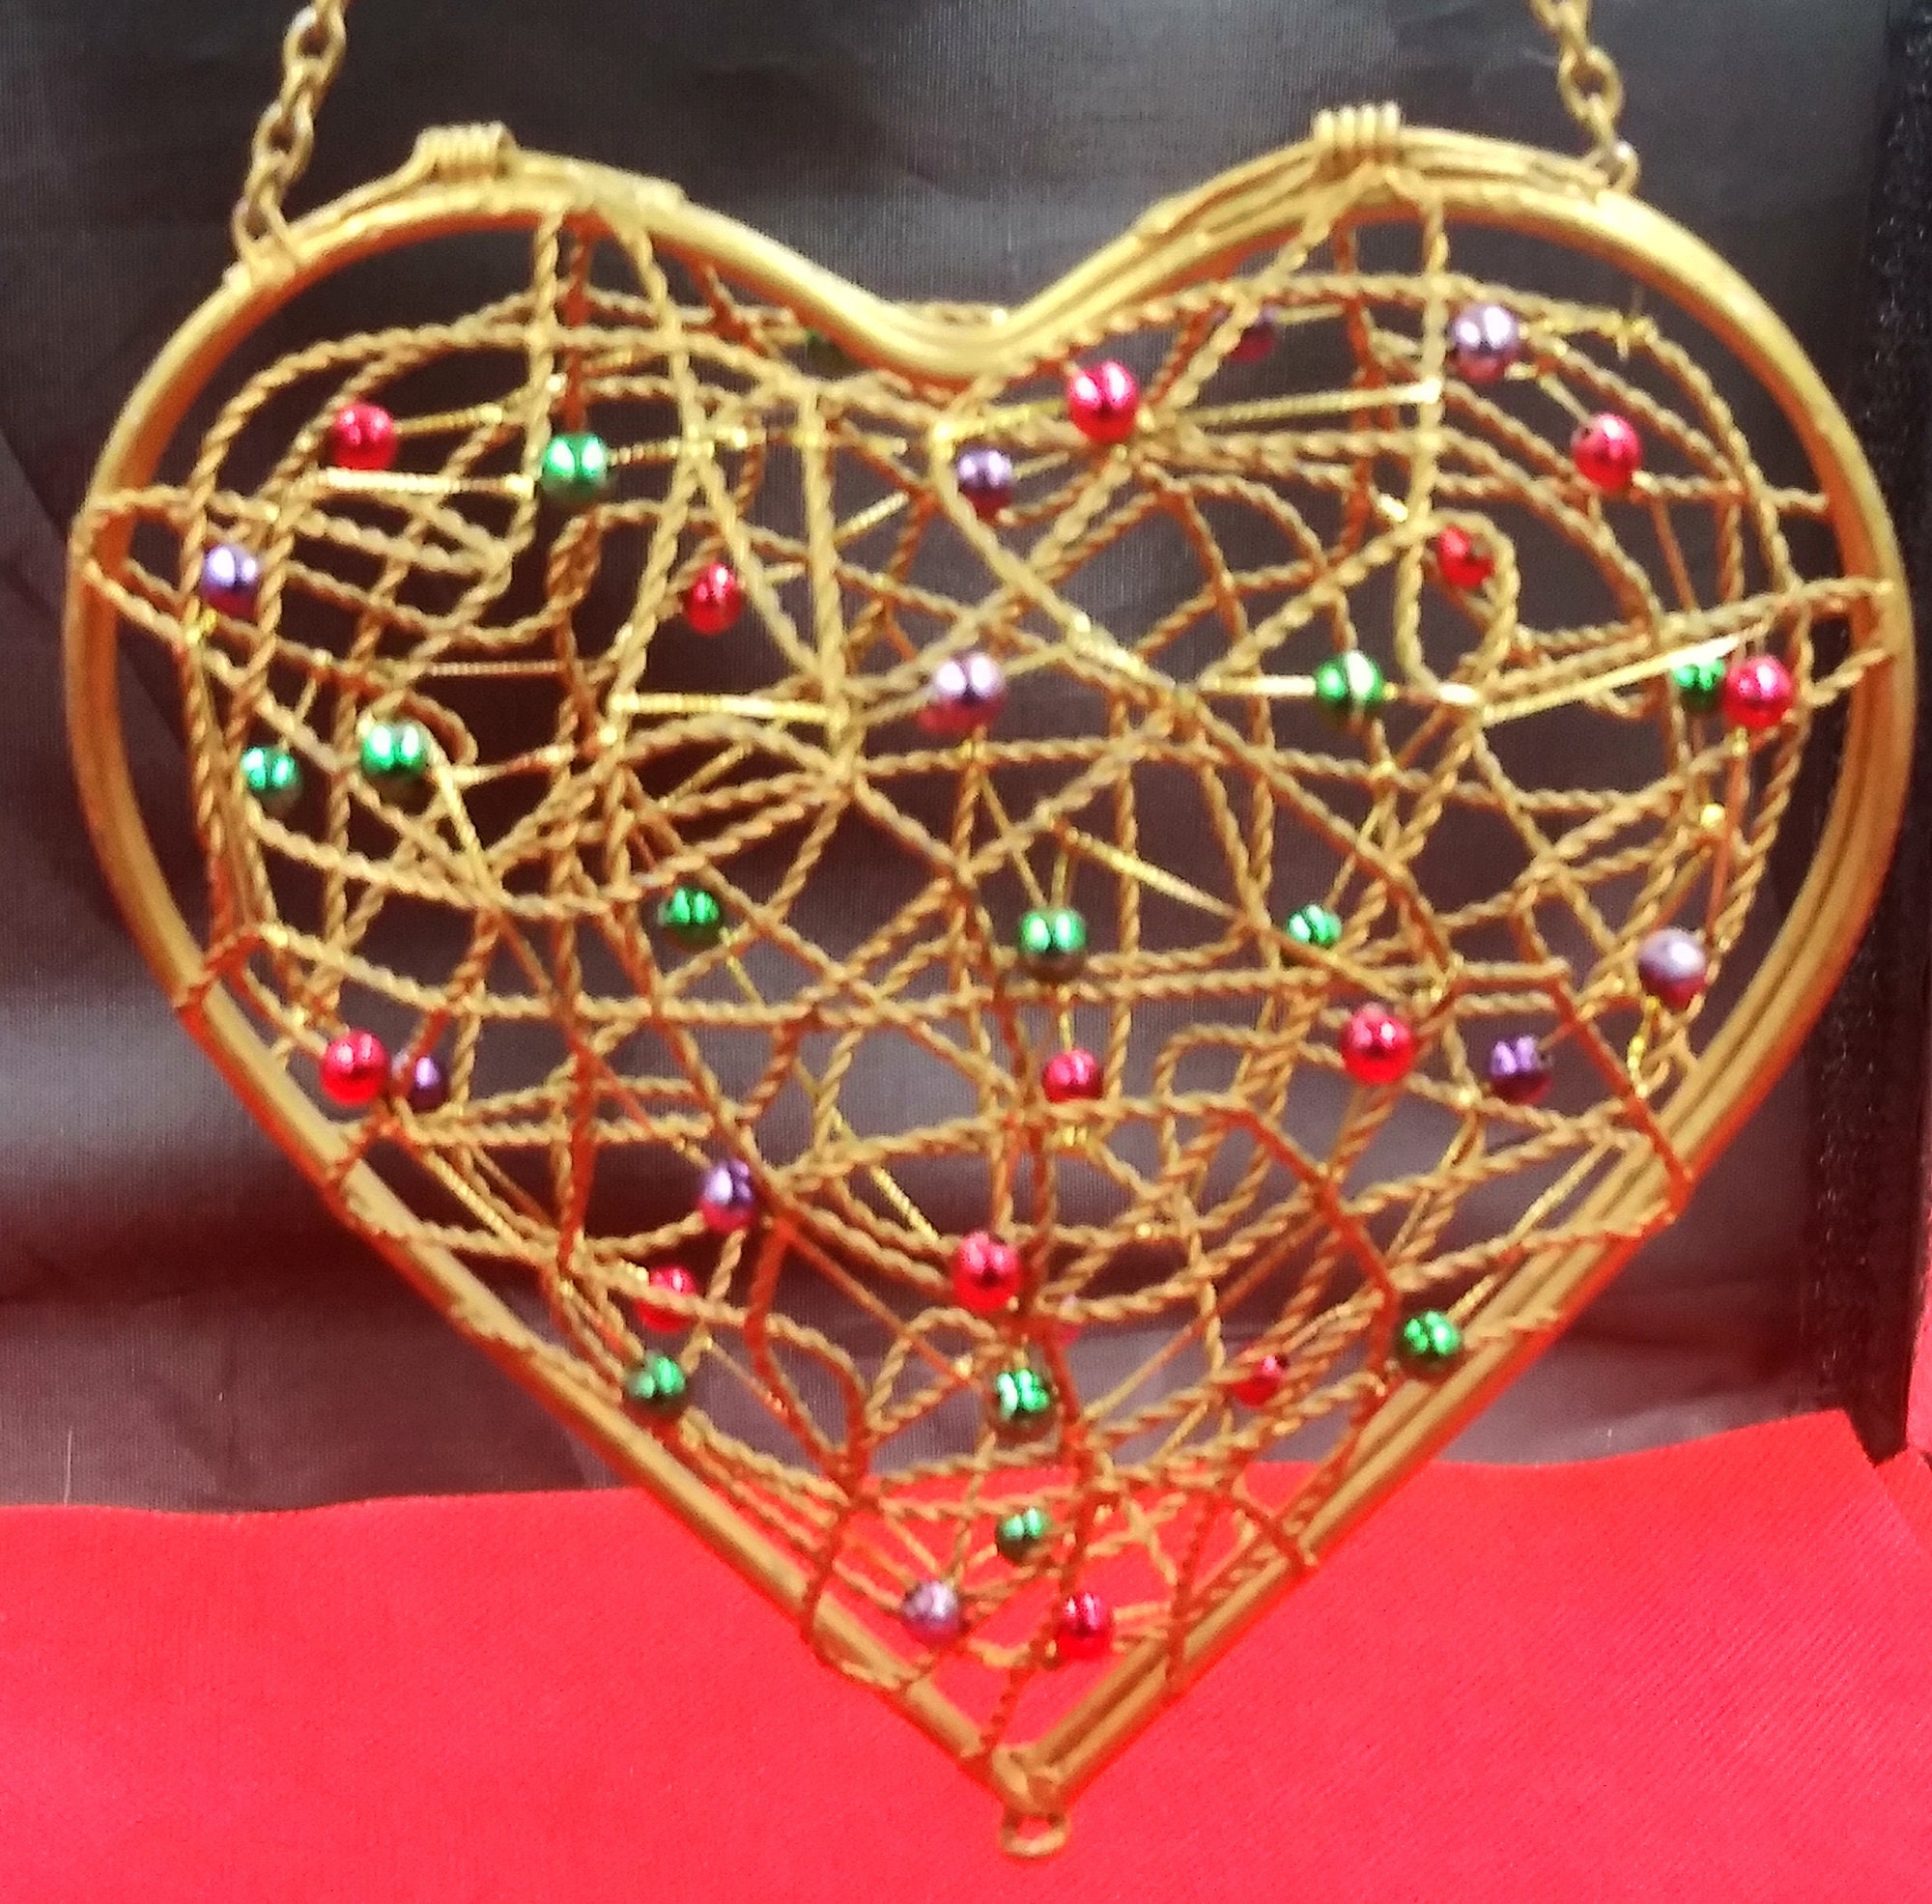 boîte/panier à bibelots en forme de coeur fil métallique ouvert. perlage rouge/vert/violet. couvercle charnière. chaîne pour accrocher